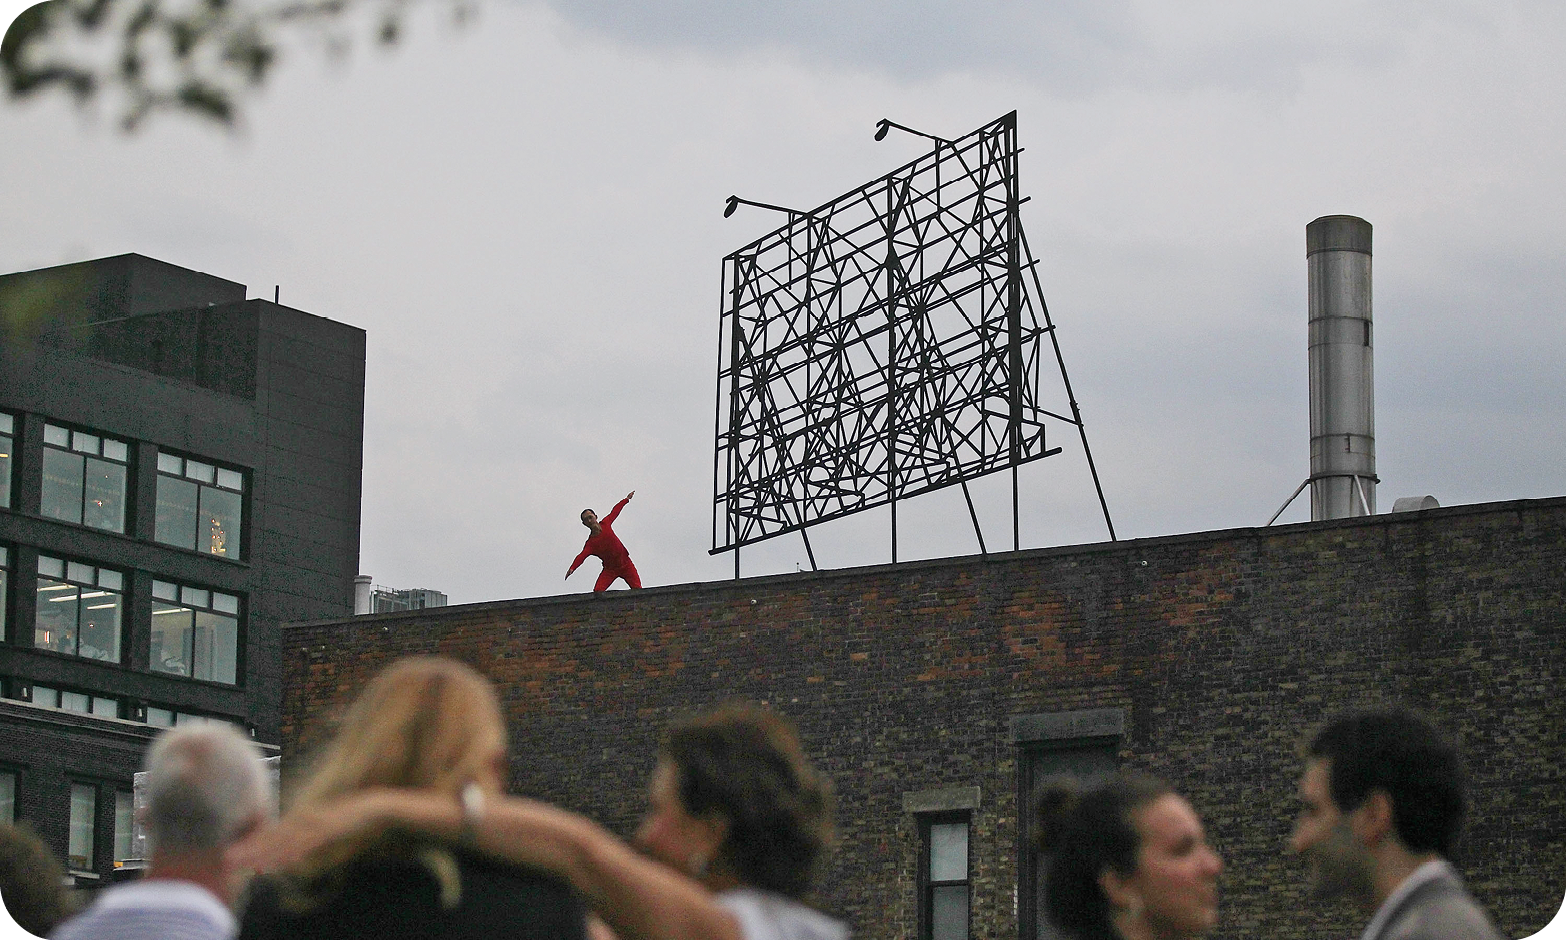 Fotografia. Vista de baixo para cima de uma pessoa que usa roupa vermelha e se movimenta sobre uma plataforma em um telhado em área urbana. Em primeiro plano, há pessoas desfocadas que assistem à performance. Ao fundo, há prédios.